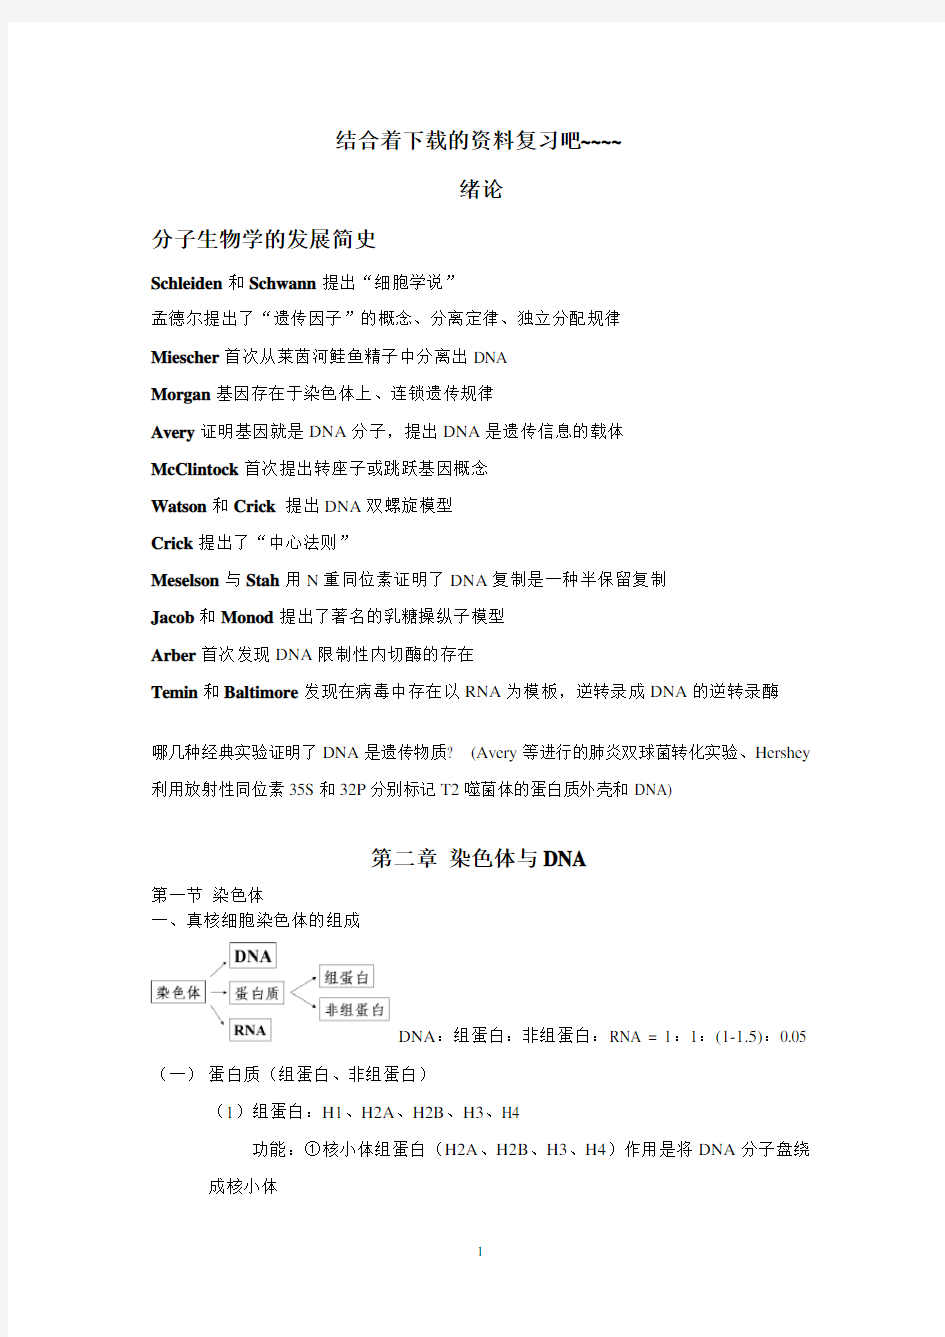 分子生物学总结(朱玉贤版)(2020年10月整理).pdf